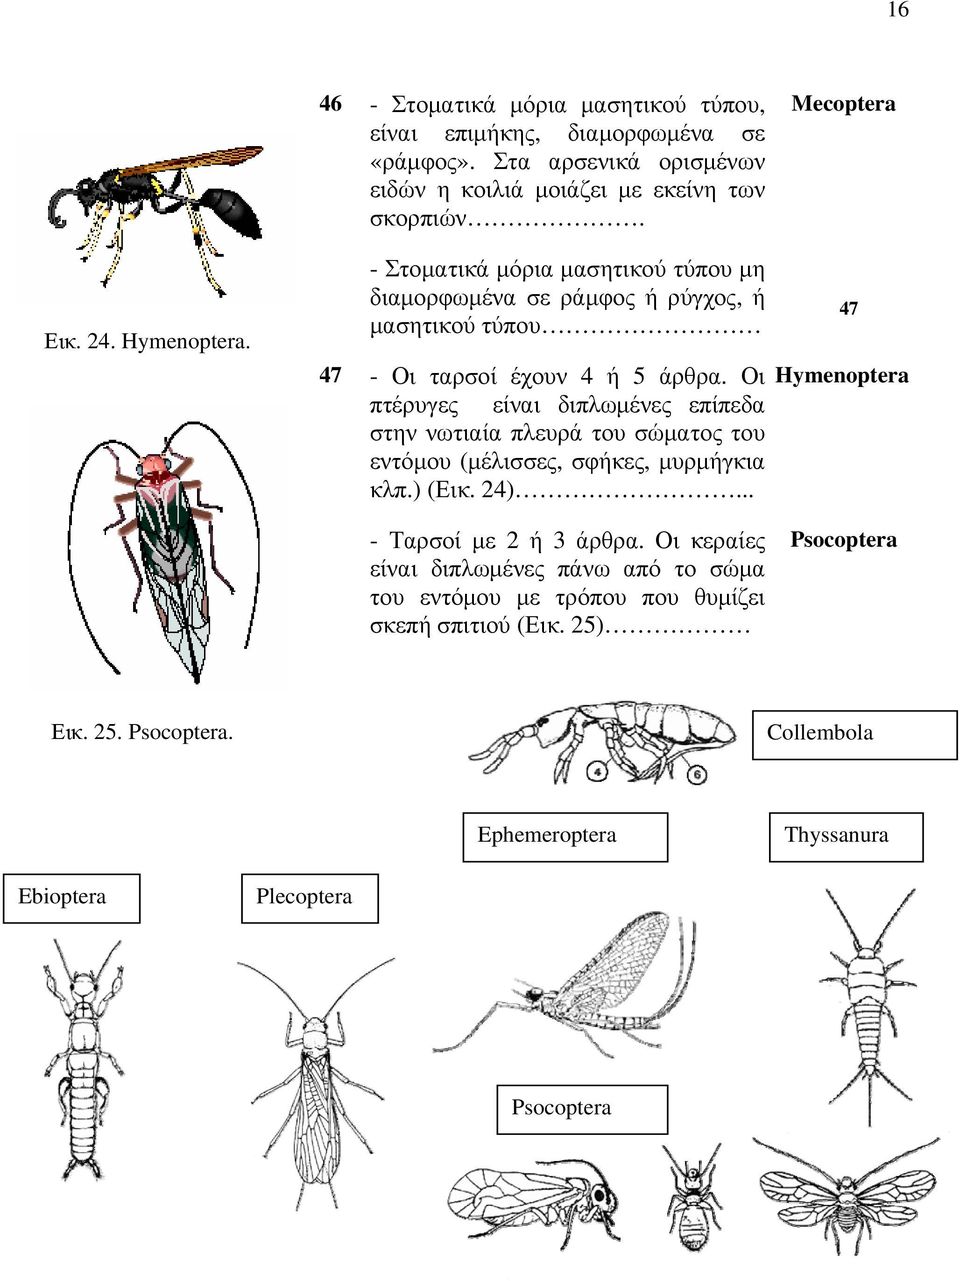 Οι Hymenoptera πτέρυγες είναι διπλωμένες επίπεδα στην νωτιαία πλευρά του σώματος του εντόμου (μέλισσες, σφήκες, μυρμήγκια κλπ.) (Εικ. 24)... 47 - Ταρσοί με 2 ή 3 άρθρα.